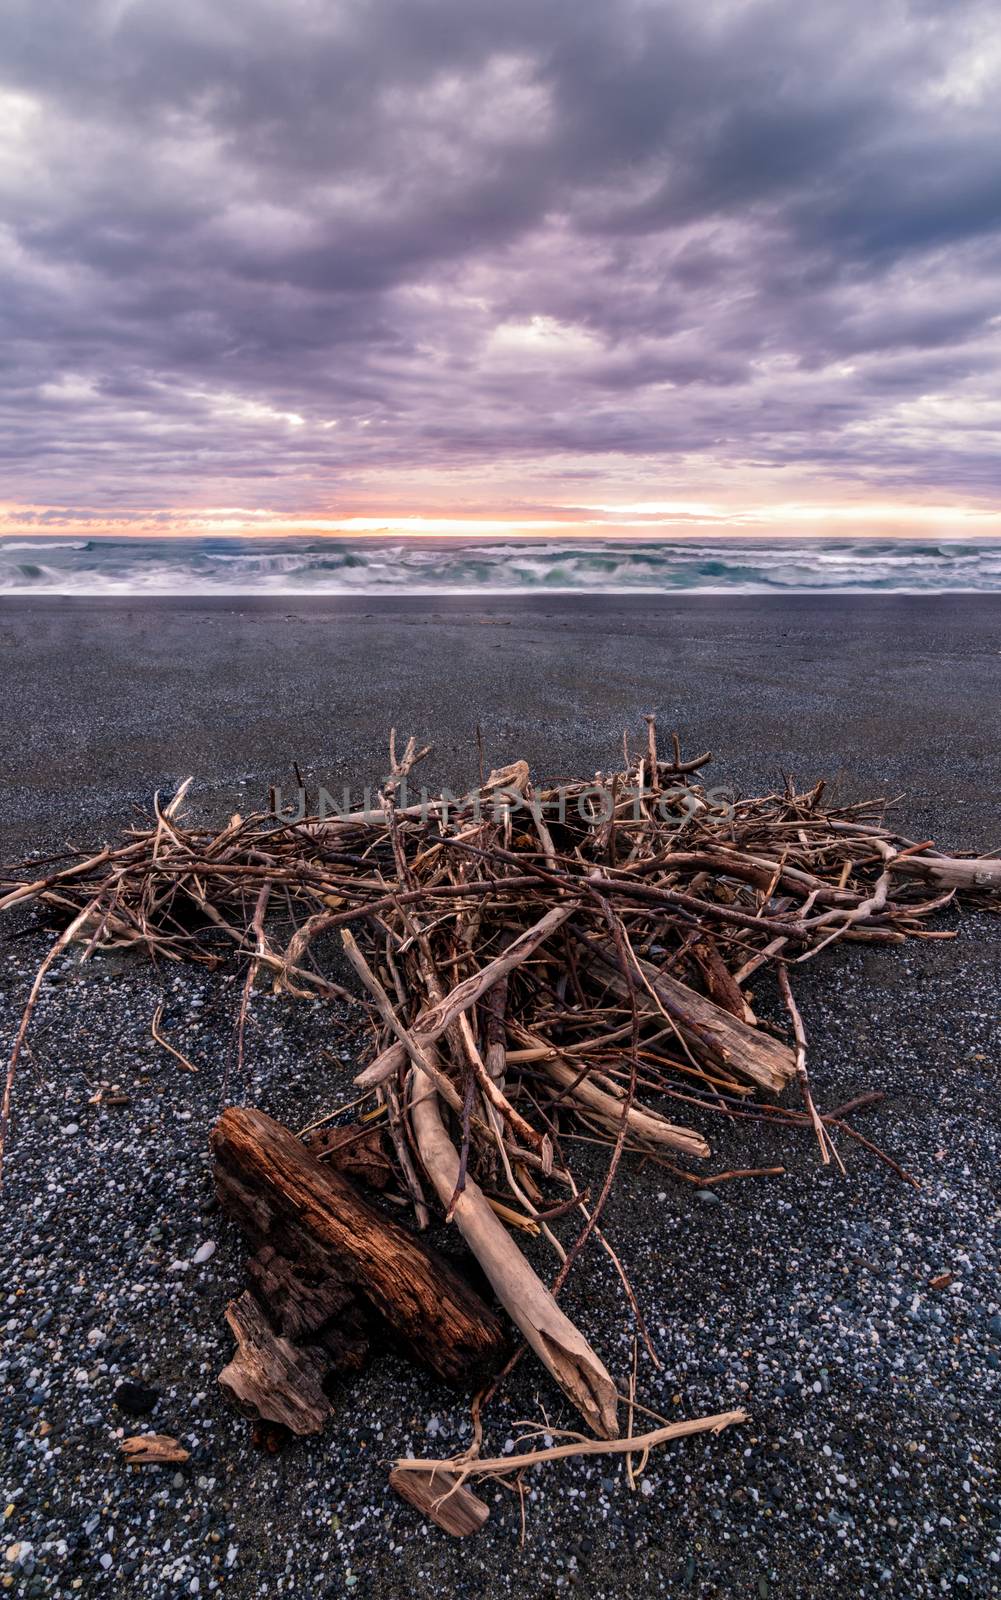 A Pile of Driftwood at a Beach, Trinidad, California, USA